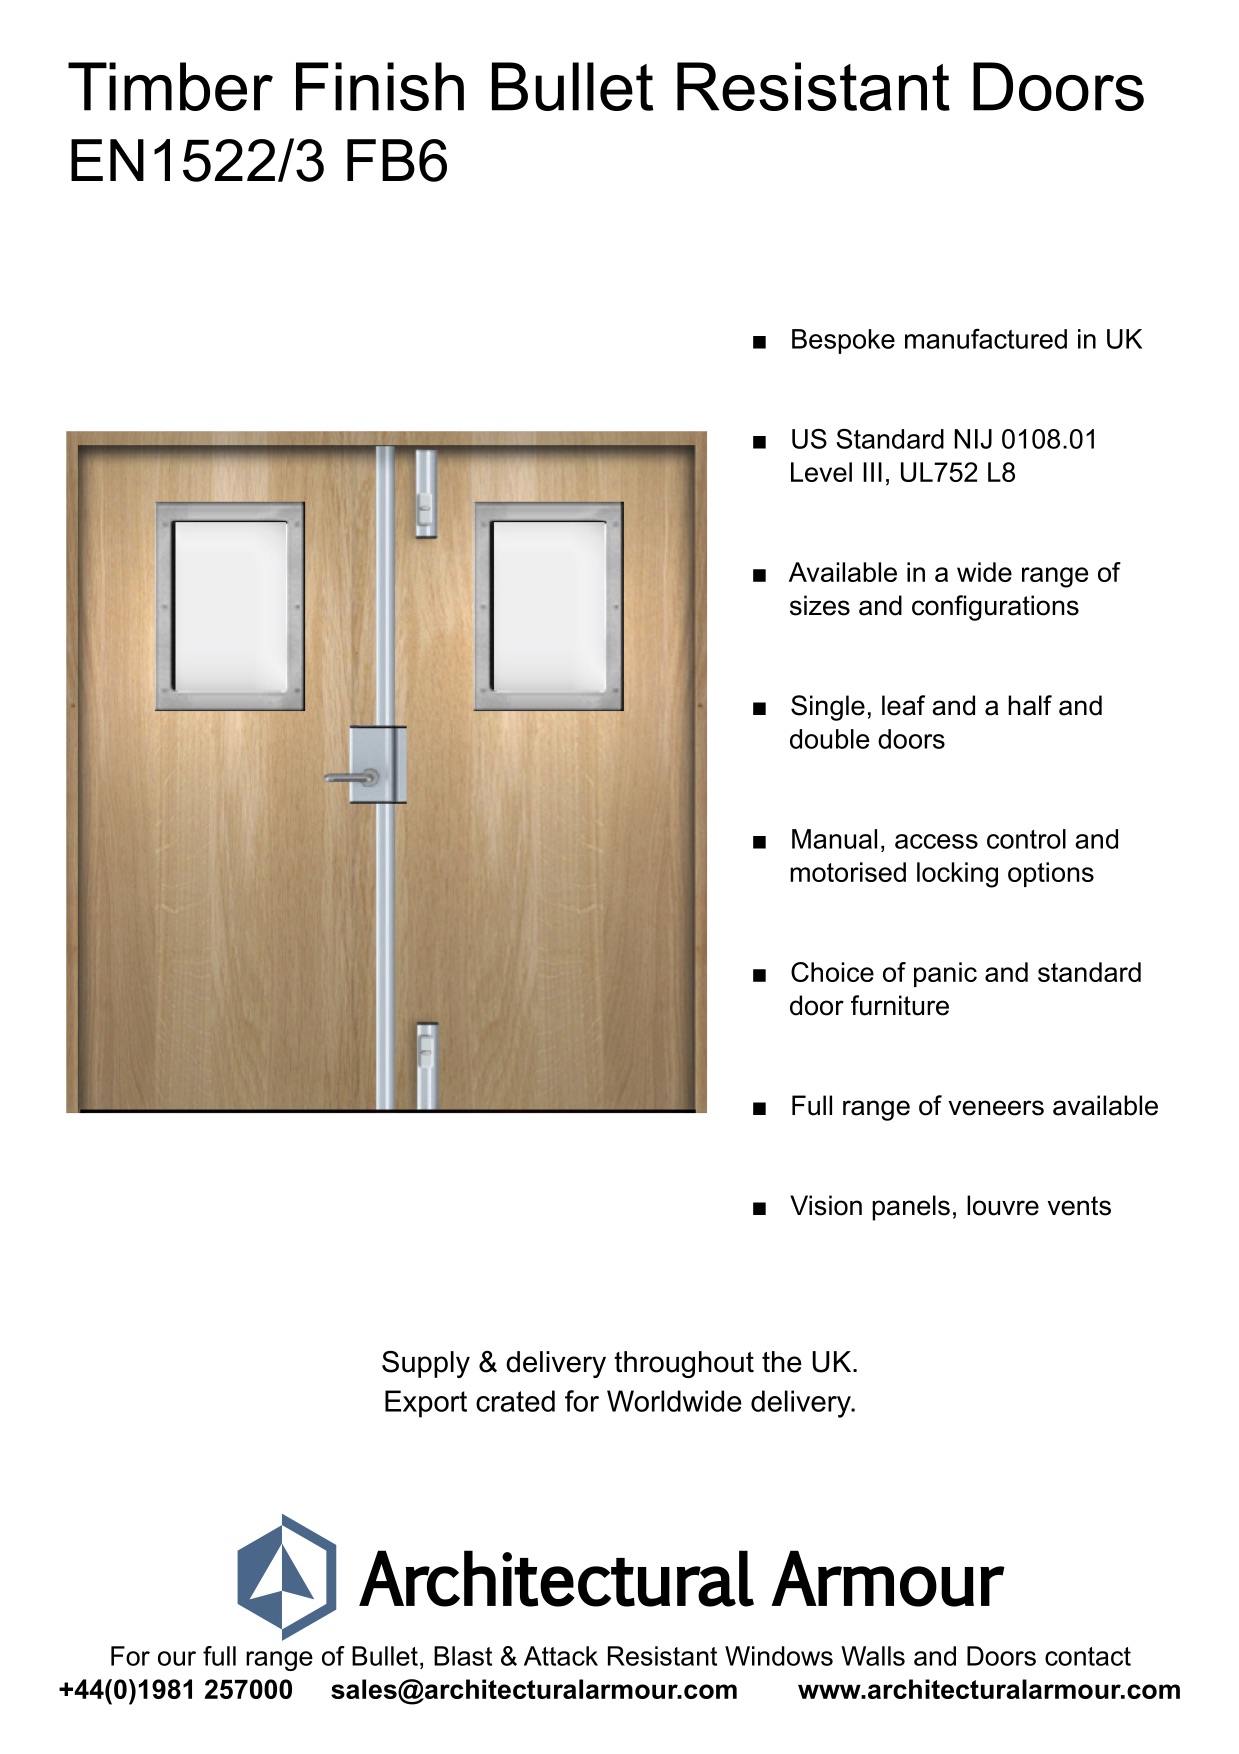 EN1522-3-FB6-Bulletproof-Doors-Vision-Panels